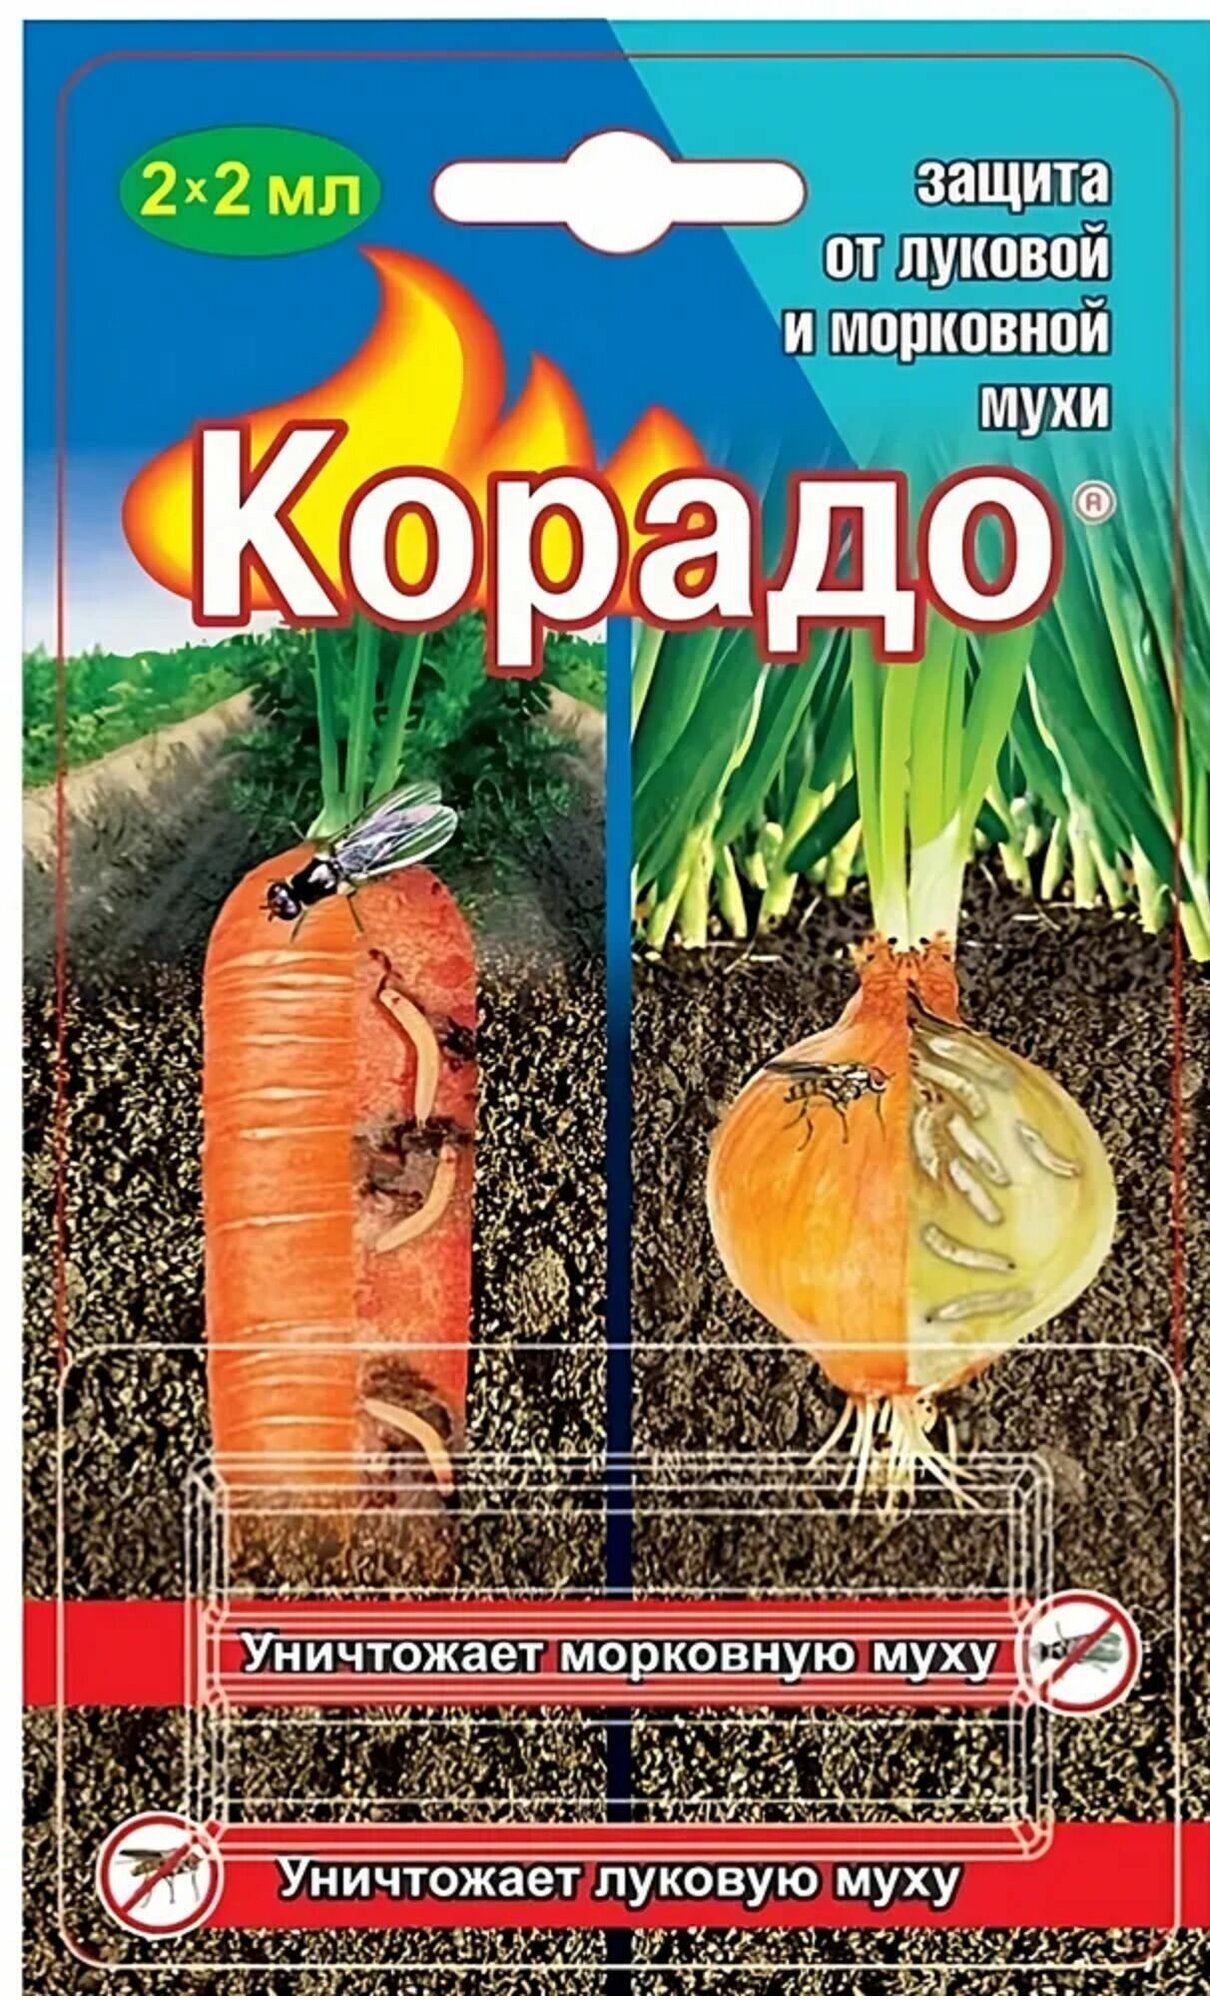 Корадо, средство от луковой и морковной мухи (2 ампулы по 2 мл). Для сезонной обработки картофеля, плодовых или овощных культур